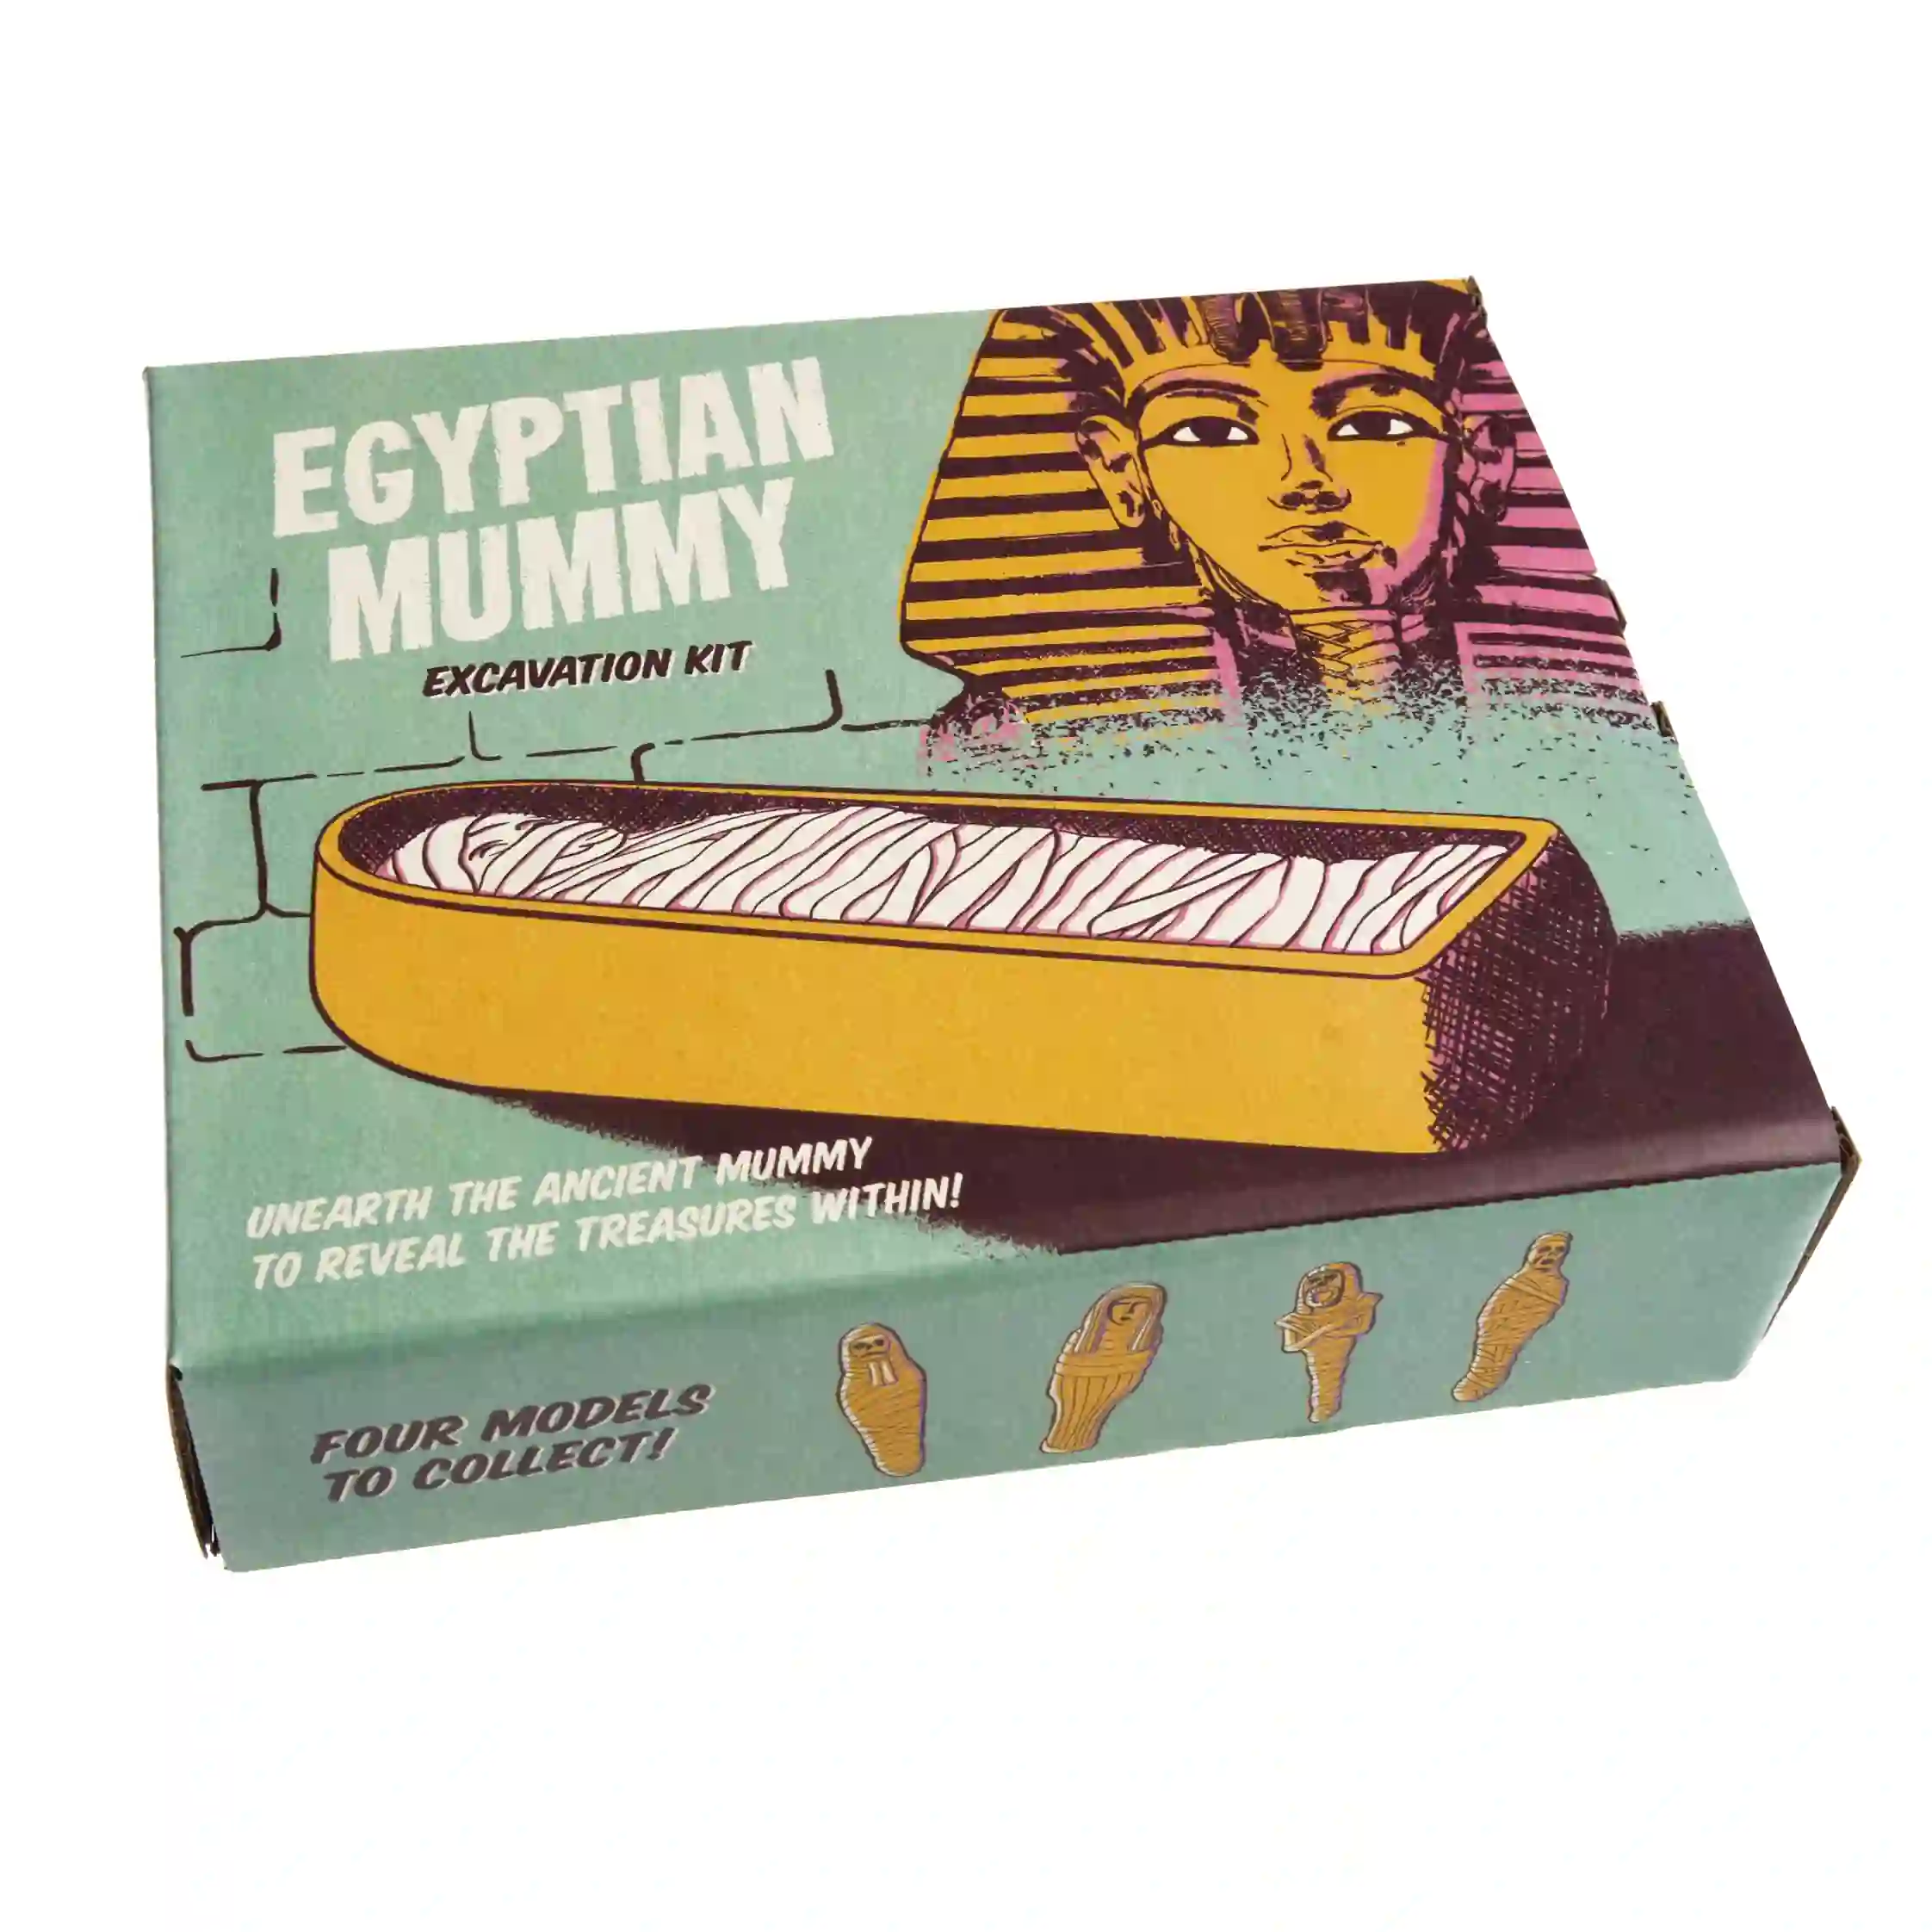 excavation kit - egyptian mummy